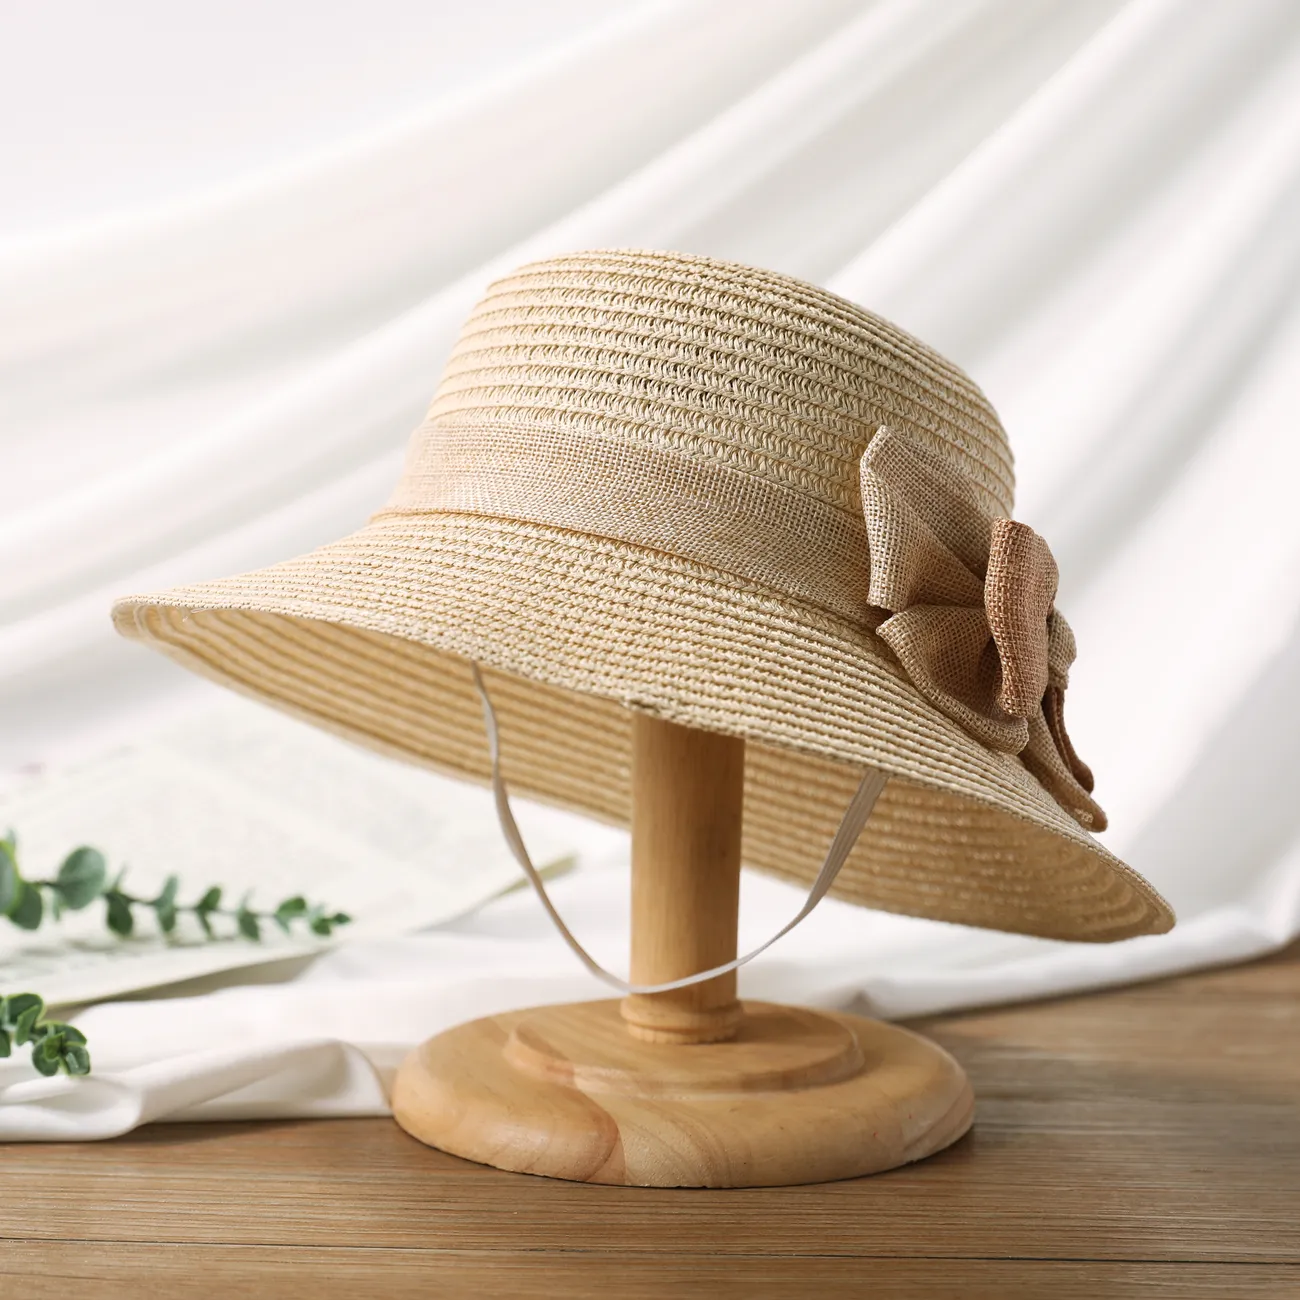 Chapéu de Sol de Verão para Meninas com Laço e Abas Enroladas, Chapéu de Praia de Palha para Viagens e Férias Cor Bege big image 1